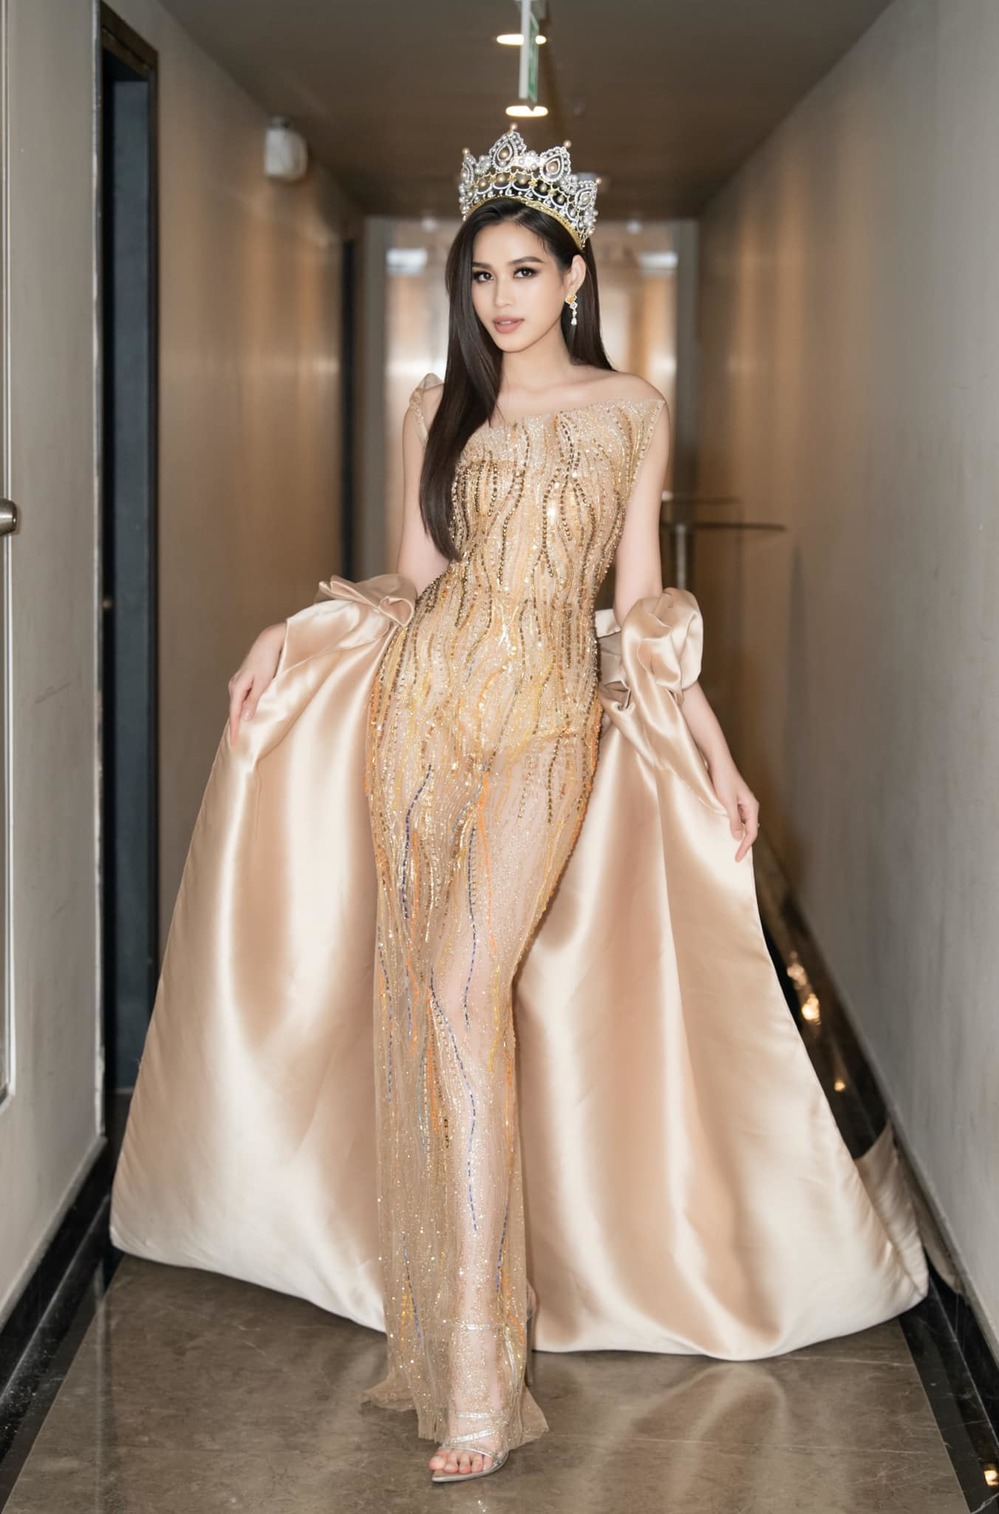 Hoa hậu Đỗ Thị Hà: Chắc chắn tôi sẽ 'bung lụa' sau khi hết nhiệm kỳ